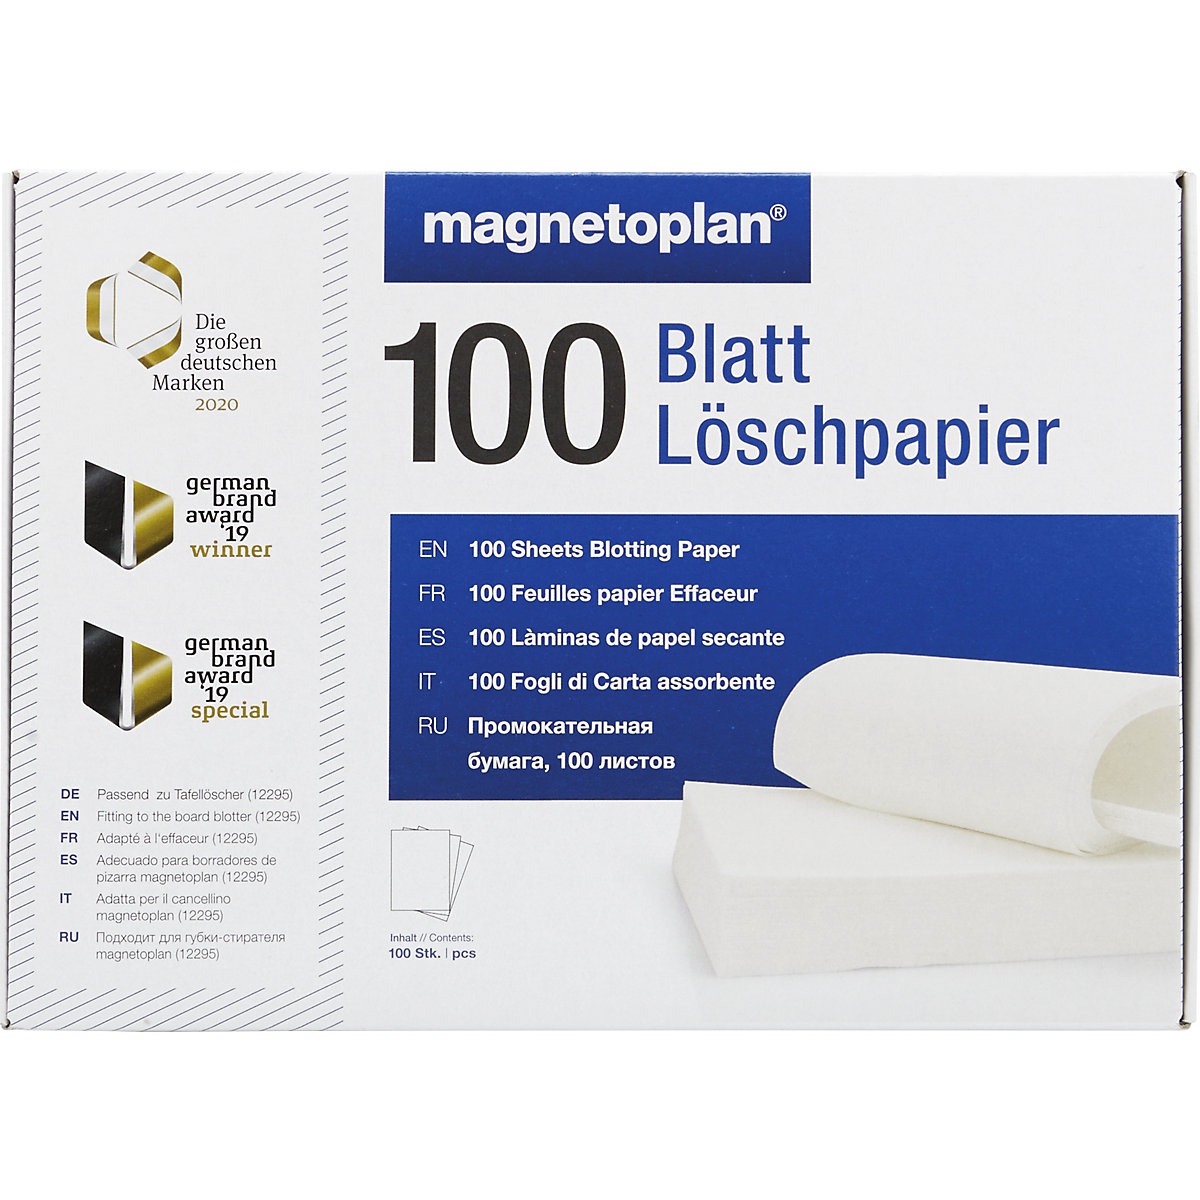 ferroscript® wispapier – magnetoplan